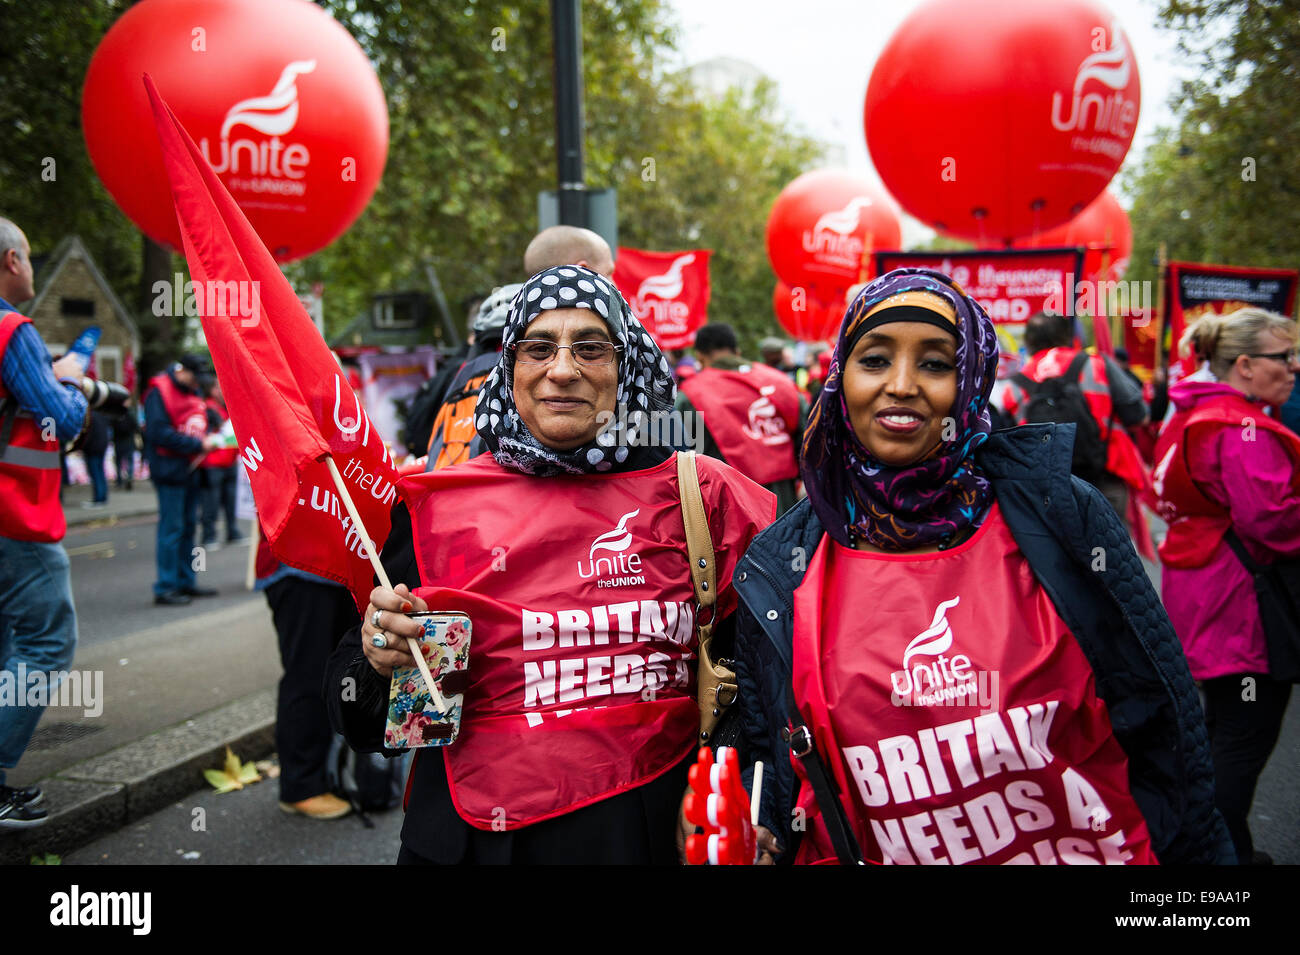 Un TUC manifestation nationale dans le centre de Londres. Deux femmes asiatiques membres de l'Union européenne unissent. Banque D'Images